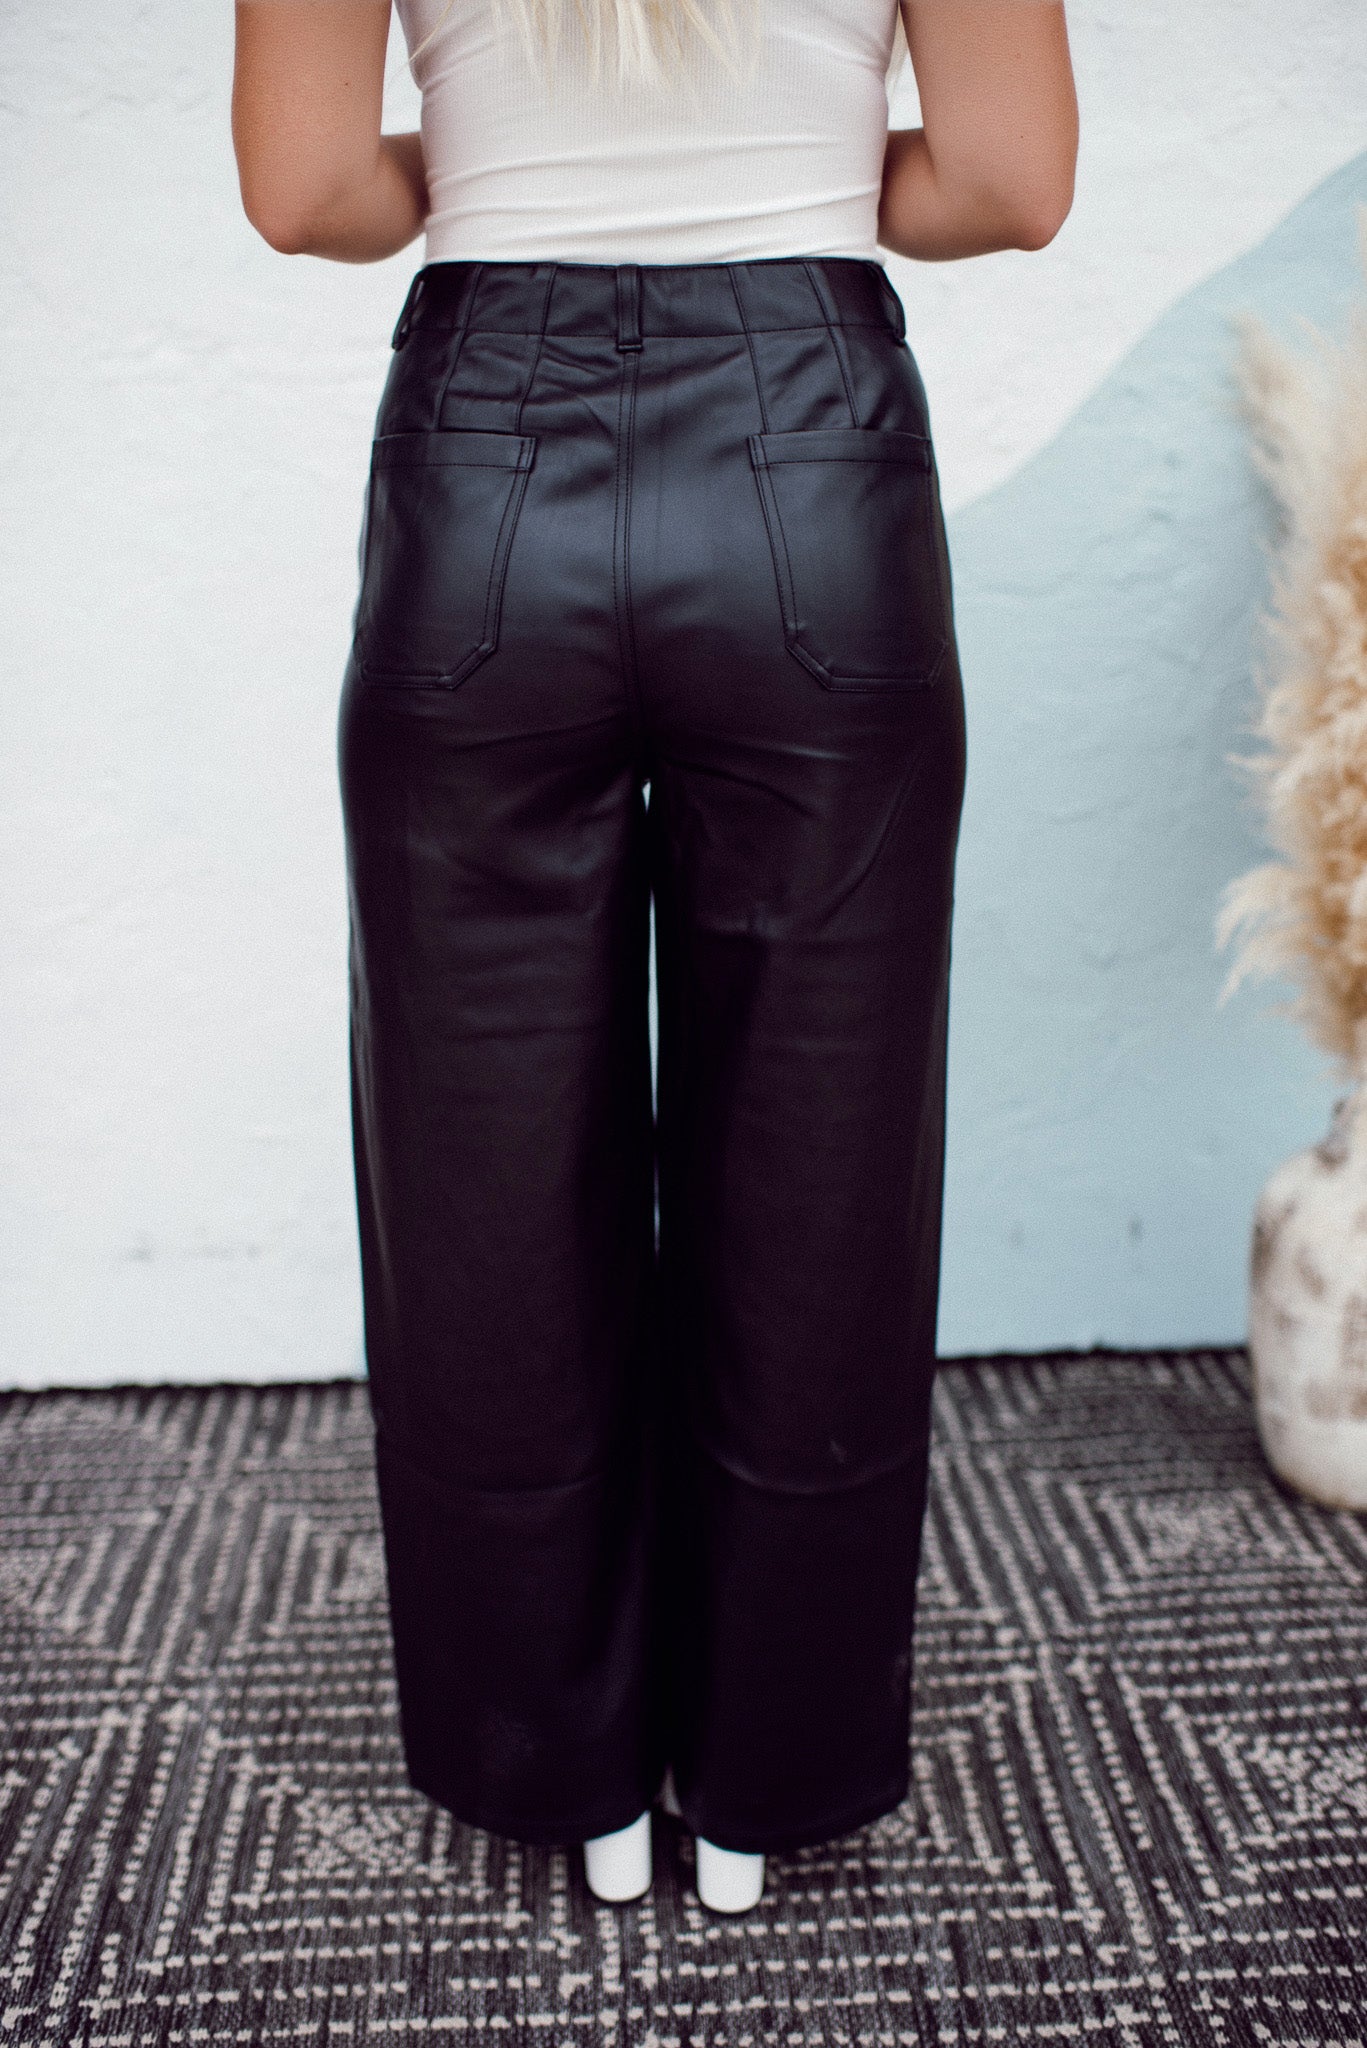 Patch Pocket Faux Leather Pants (Black)